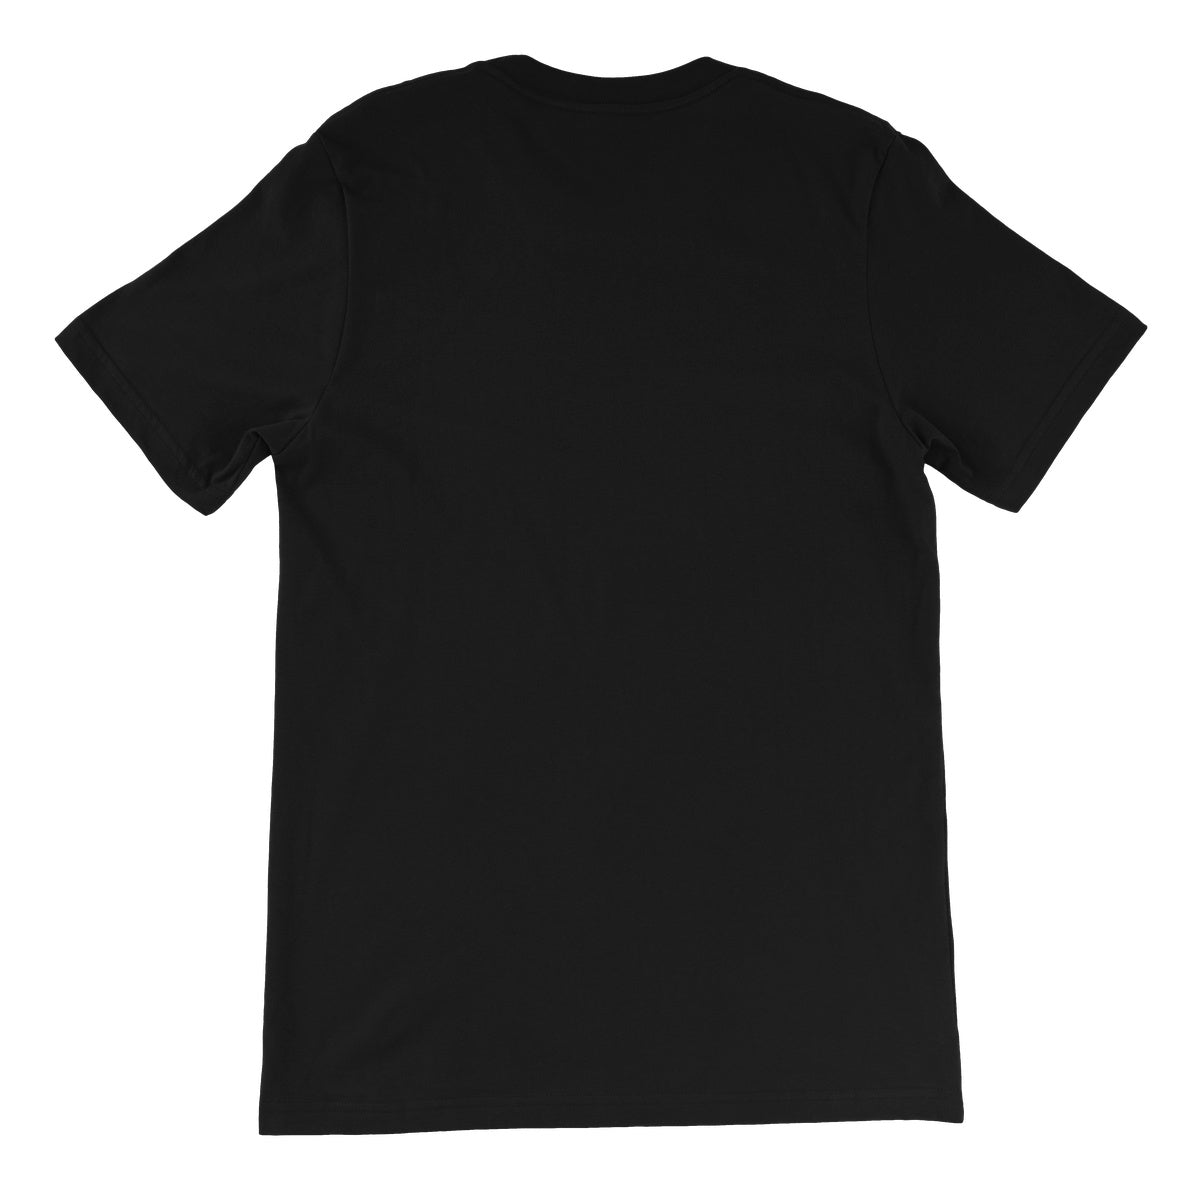 Abe Illustrated Tee Unisex Short Sleeve T-Shirt